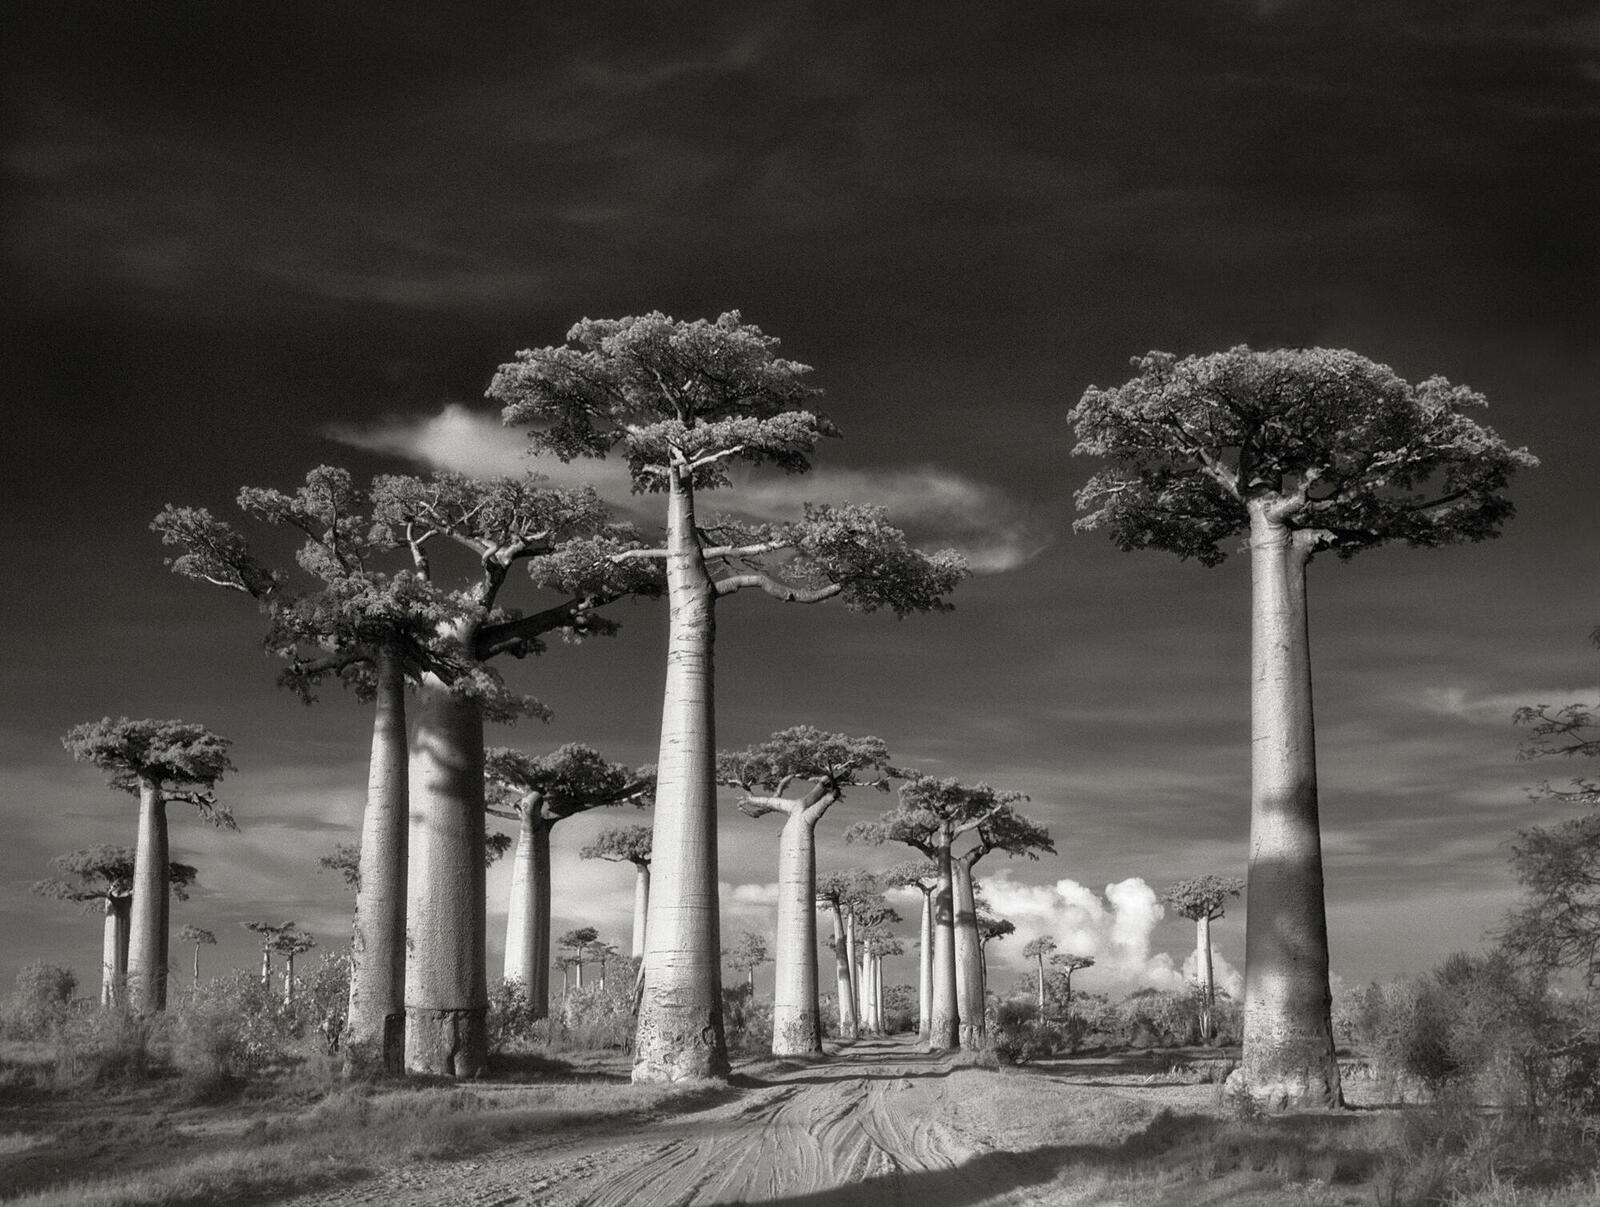 Road passing between baobab trees